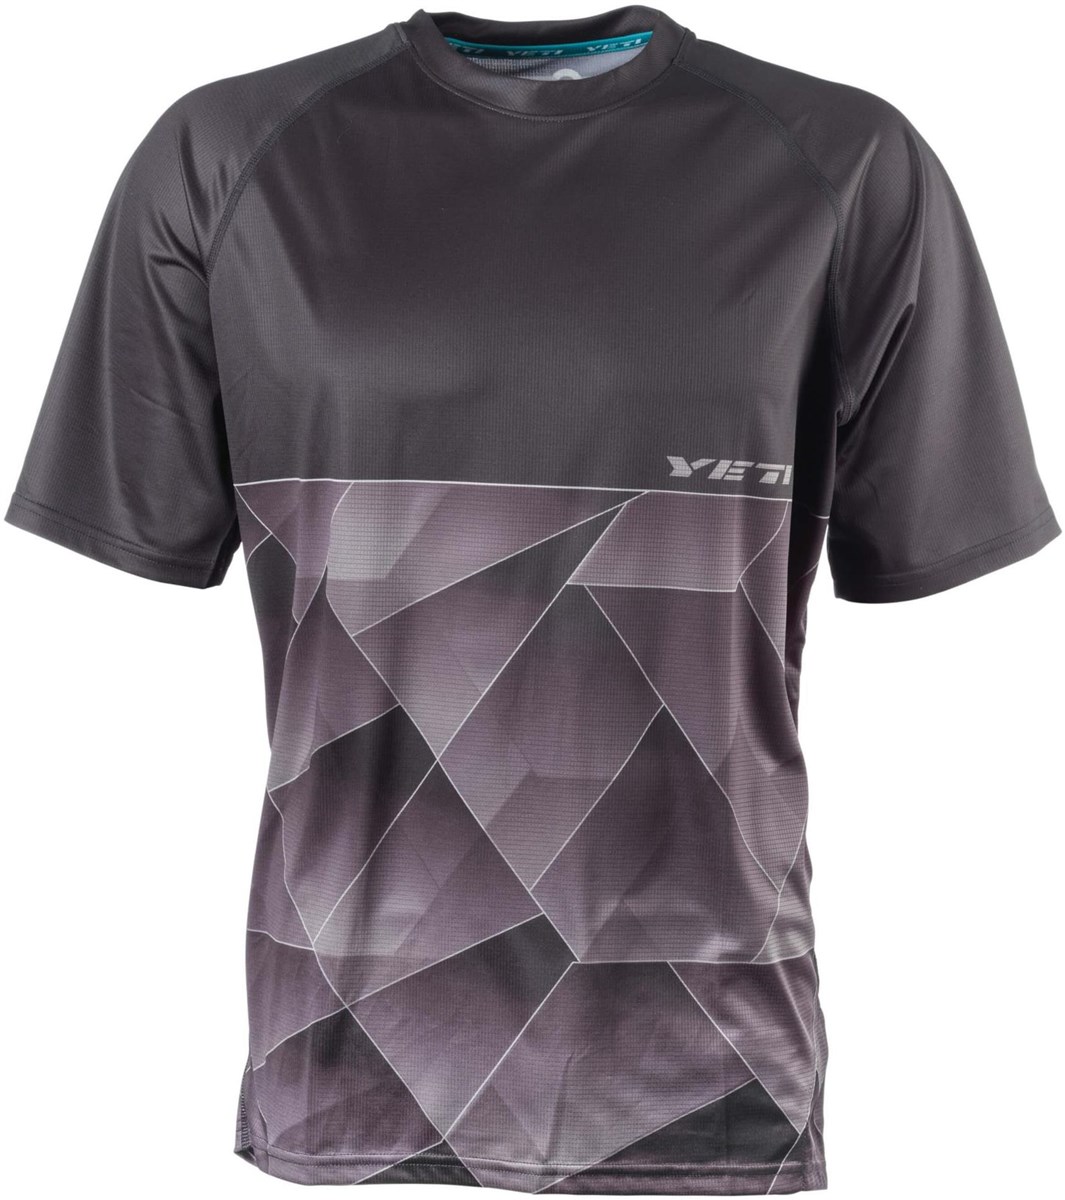 Yeti Alder Short Sleeve Jersey 2017 product image